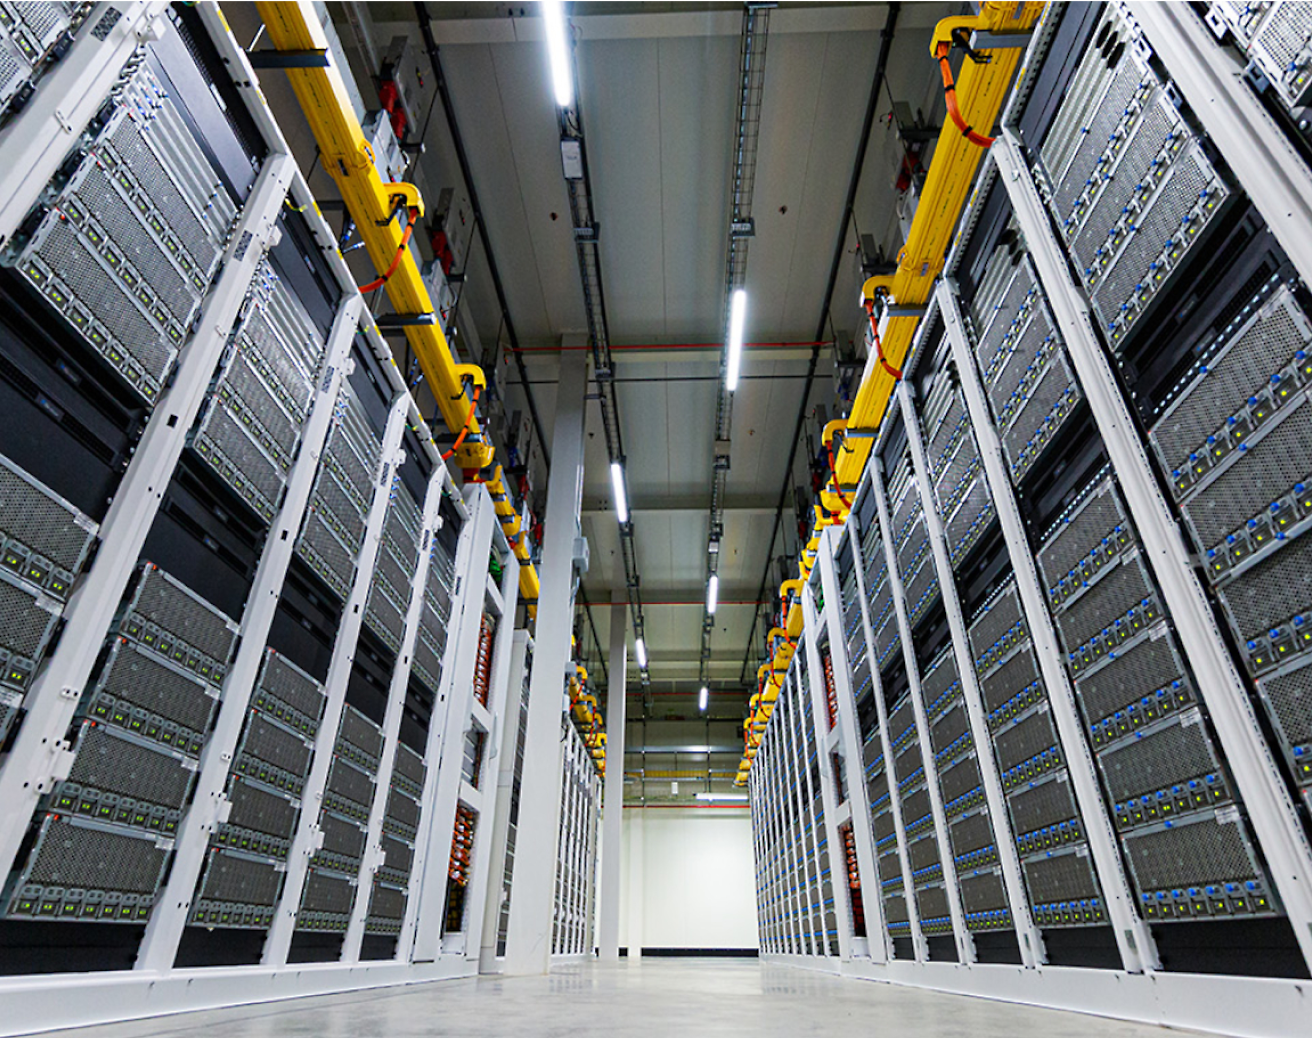 케이블 트레이 오버헤드가 있는 데이터 센터의 높이가 높은 최신 서버 랙의 행 사이에 쌓입니다.